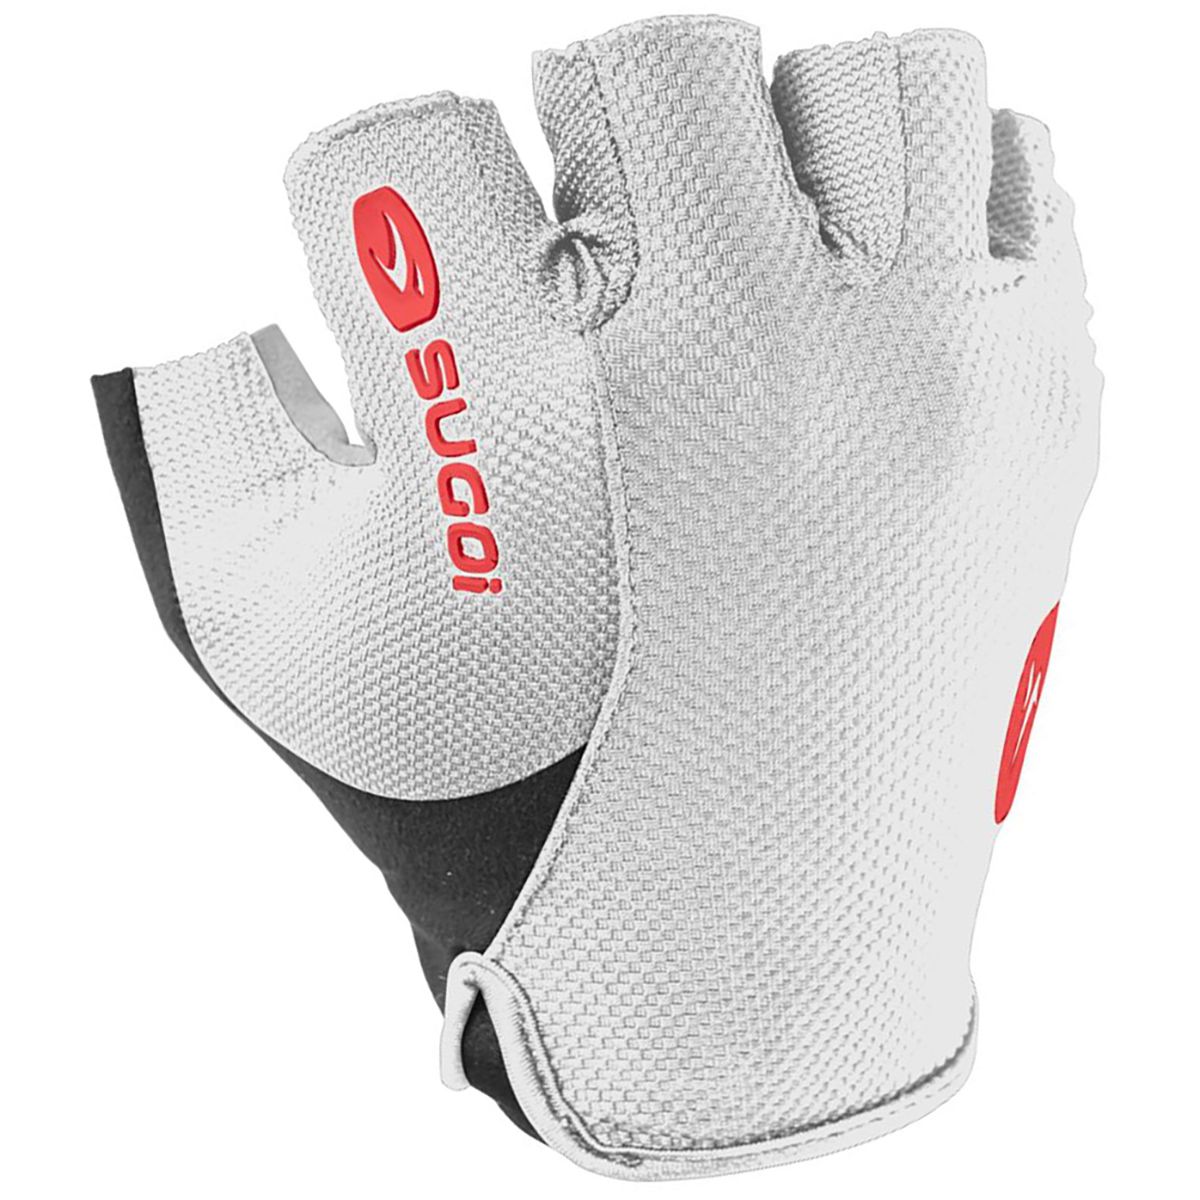 SUGOi RC100 Glove White, S